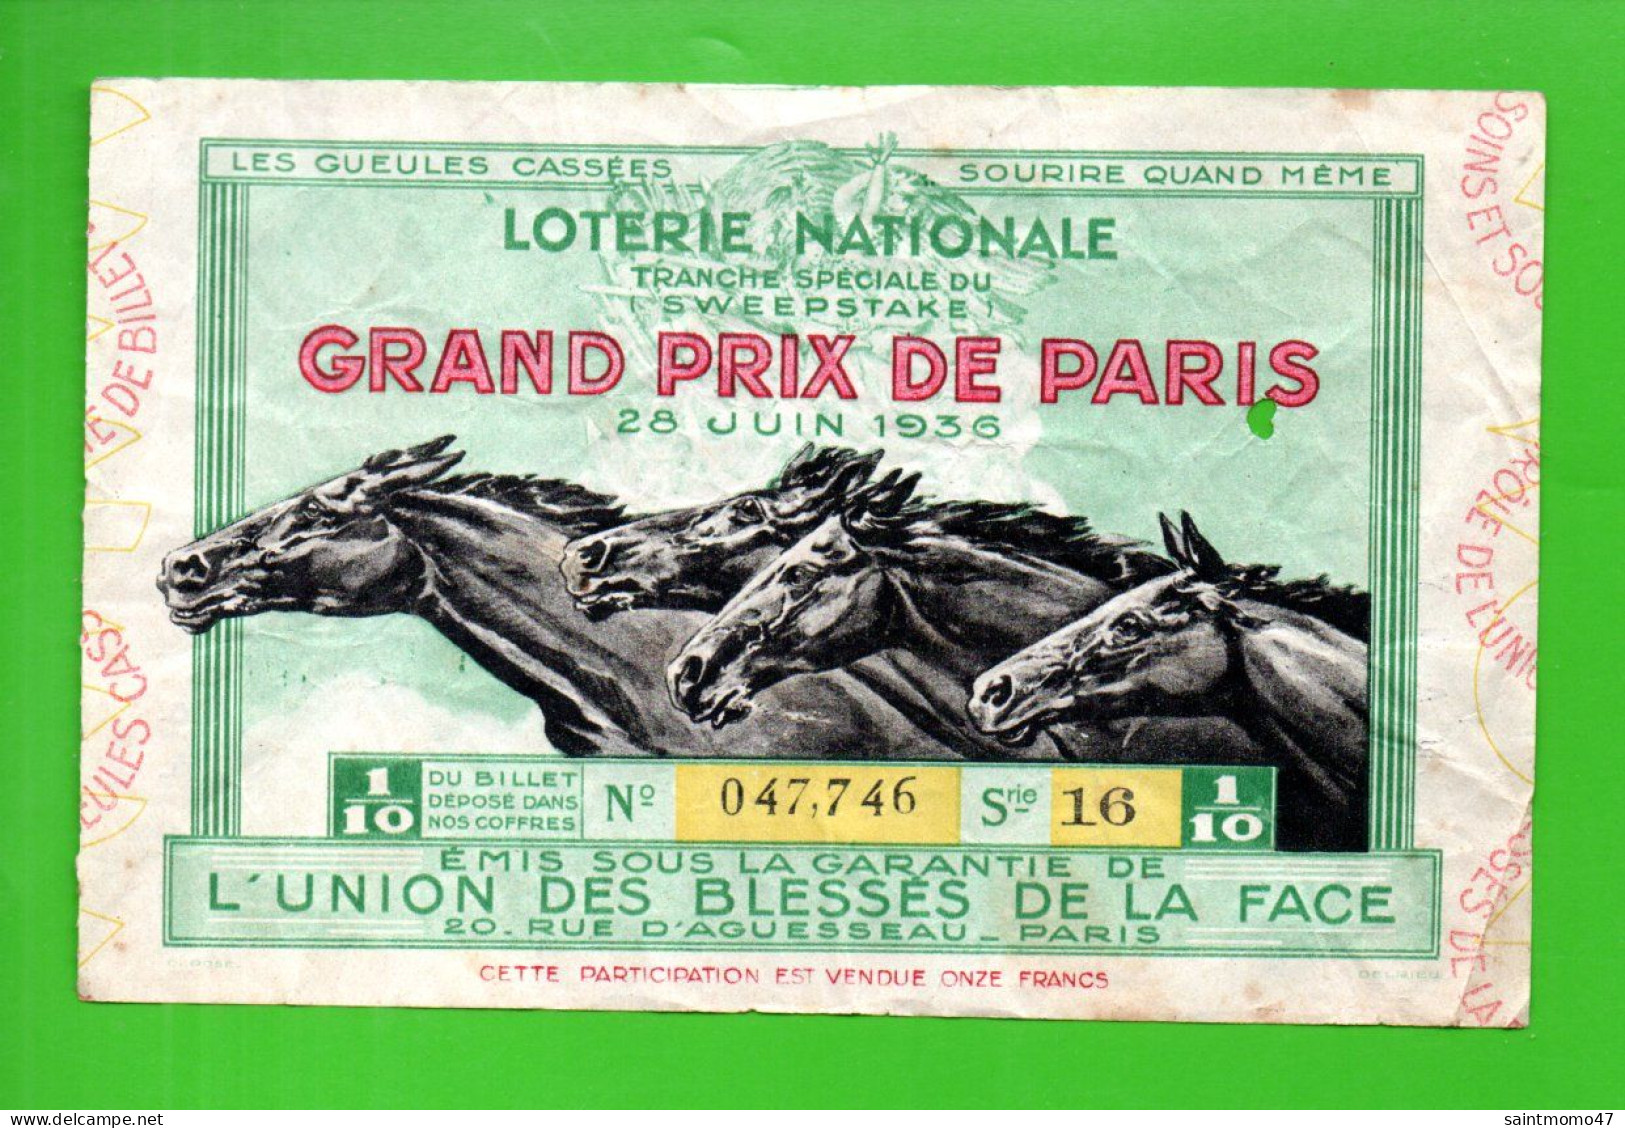 FRANCE . LOTERIE NATIONALE . " GRAND PRIX DE PARIS 1936 " - Ref. N°13027 - - Lotterielose